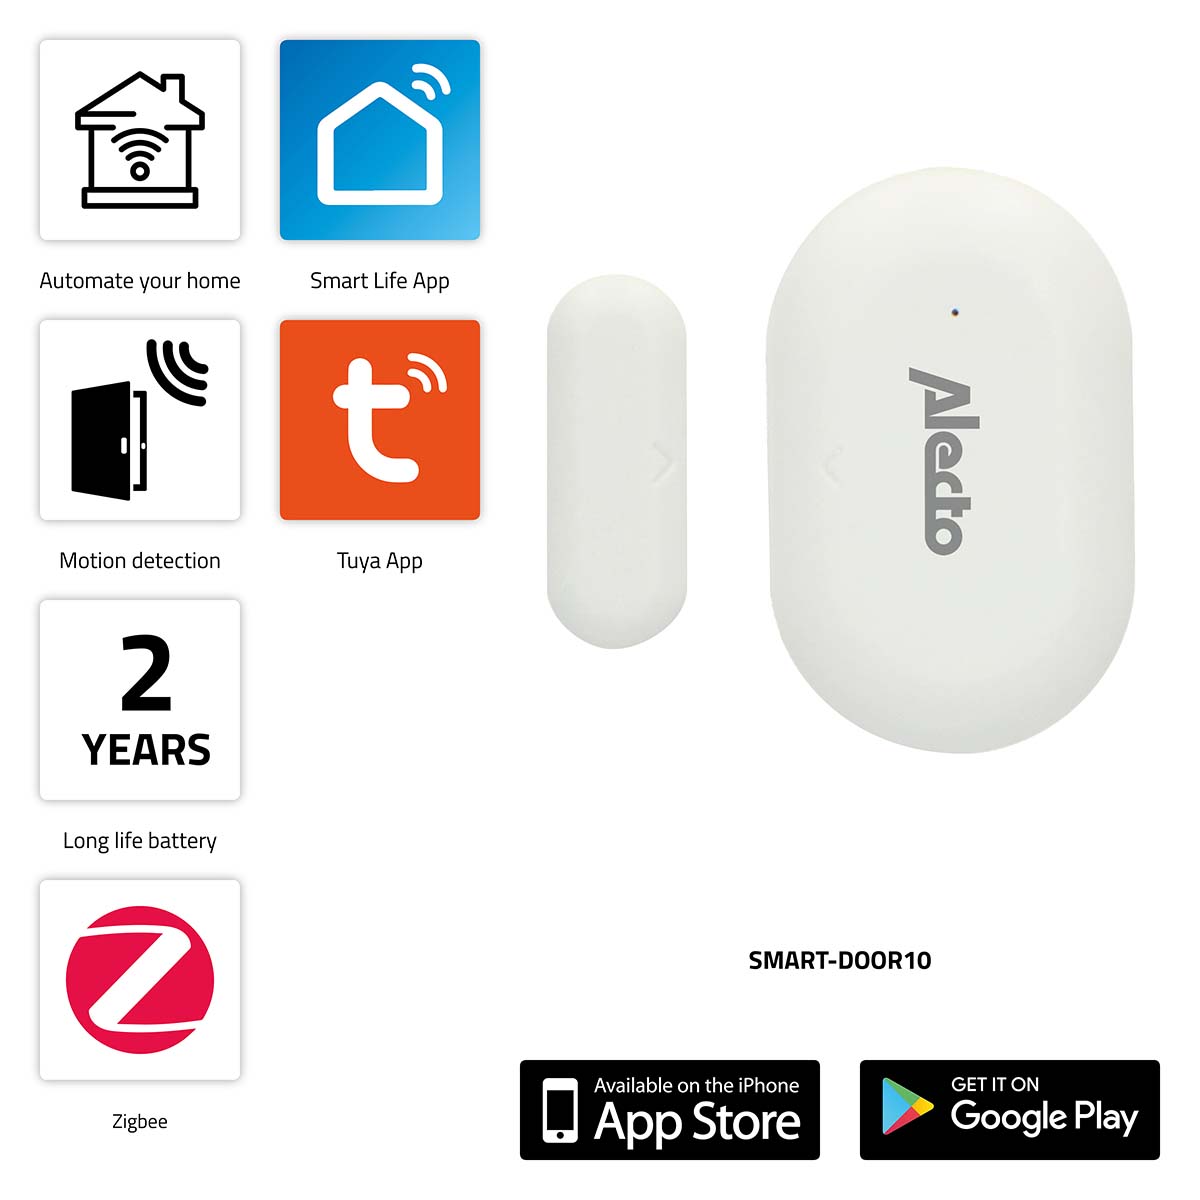 SMART-DOOR10 Inteligentní dveřní/okenní kontaktní senzor Zigbee